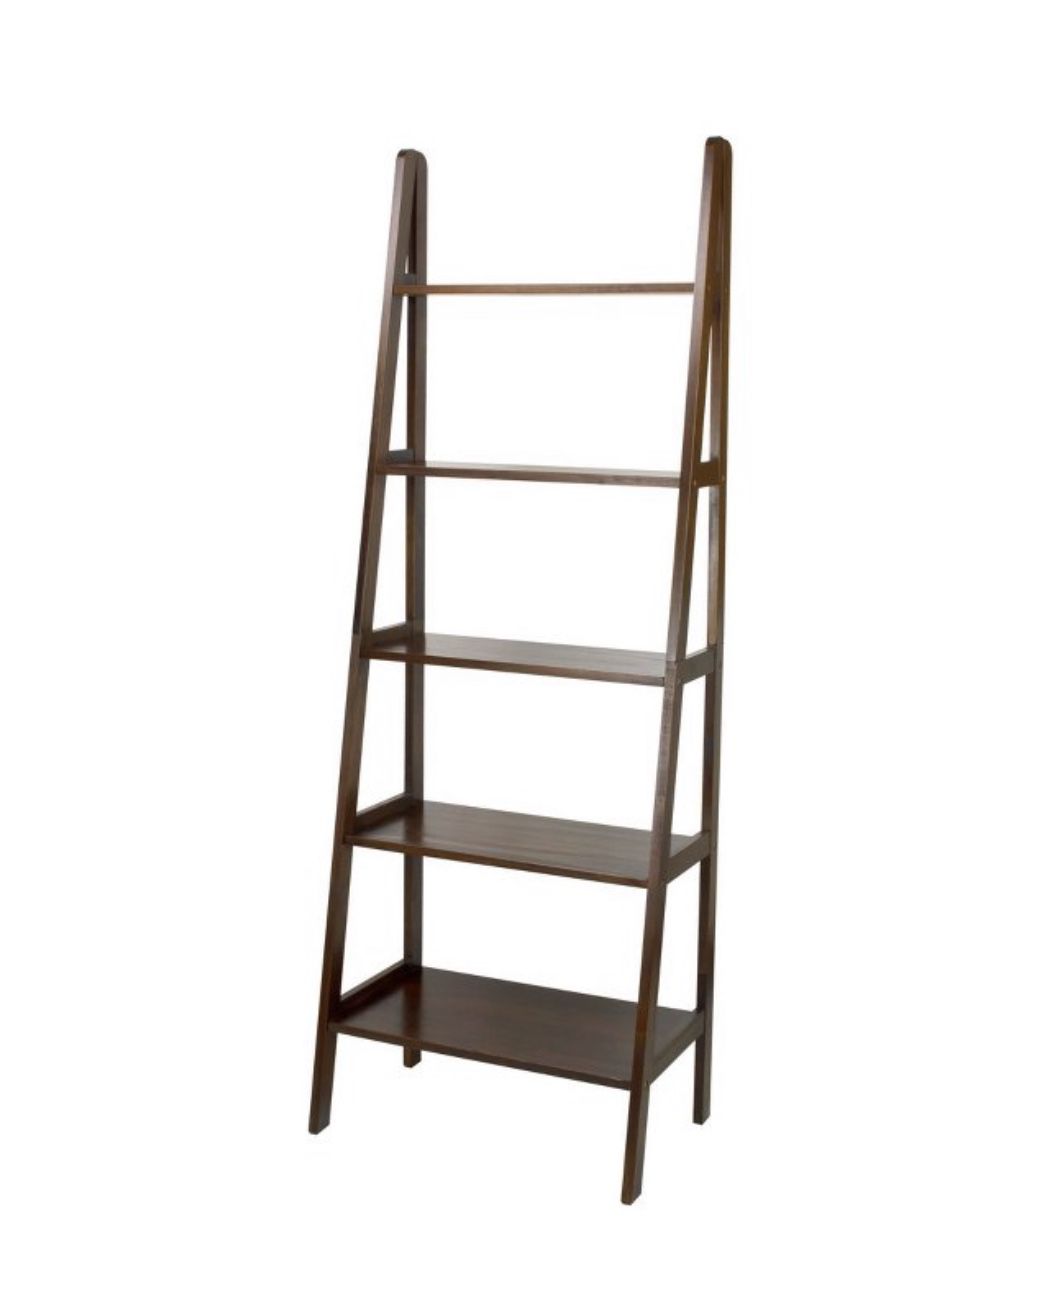 72” 5 Shelf Ladder Bookcase, Dark Brown